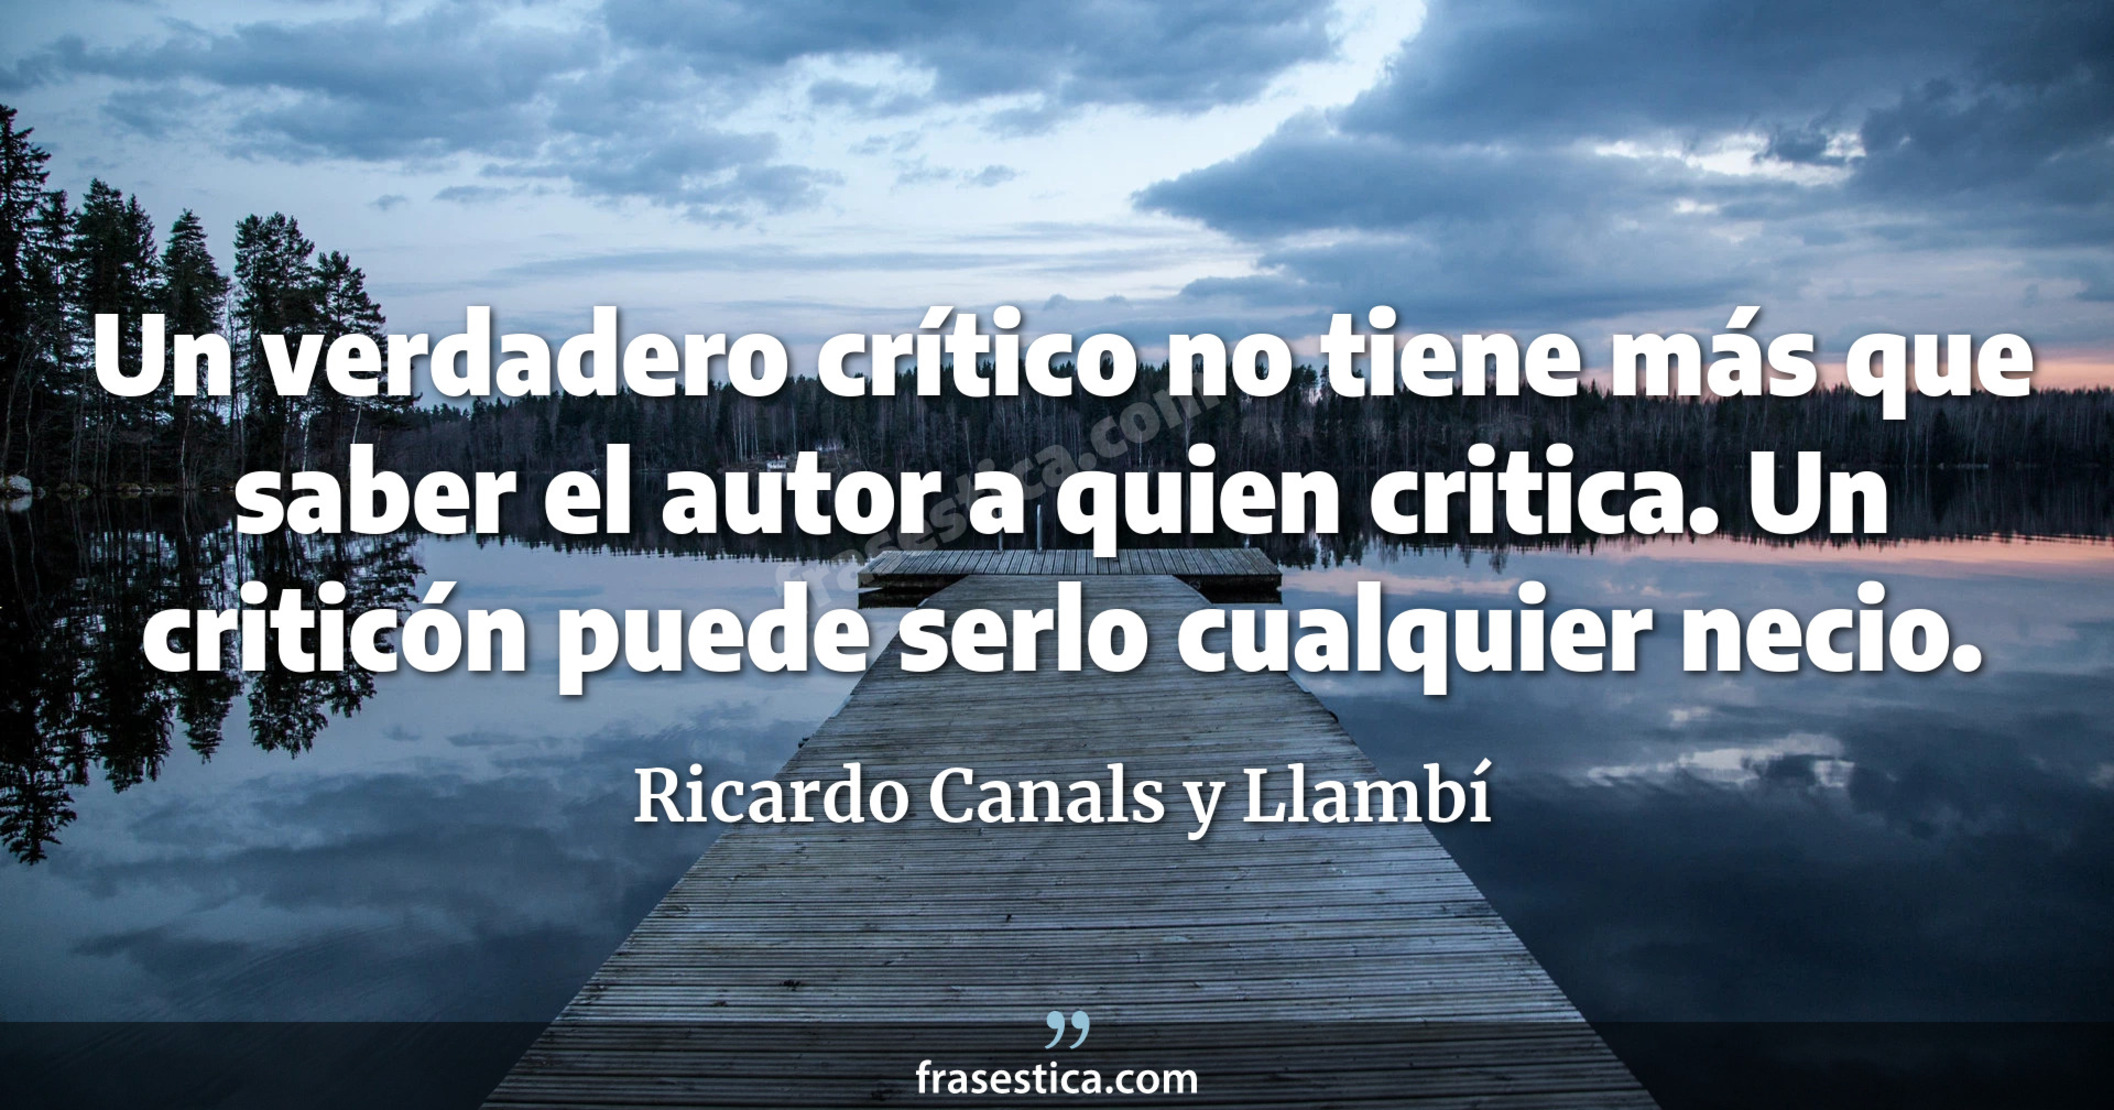 Un verdadero crítico no tiene más que saber el autor a quien critica. Un criticón puede serlo cualquier necio.  - Ricardo Canals y Llambí